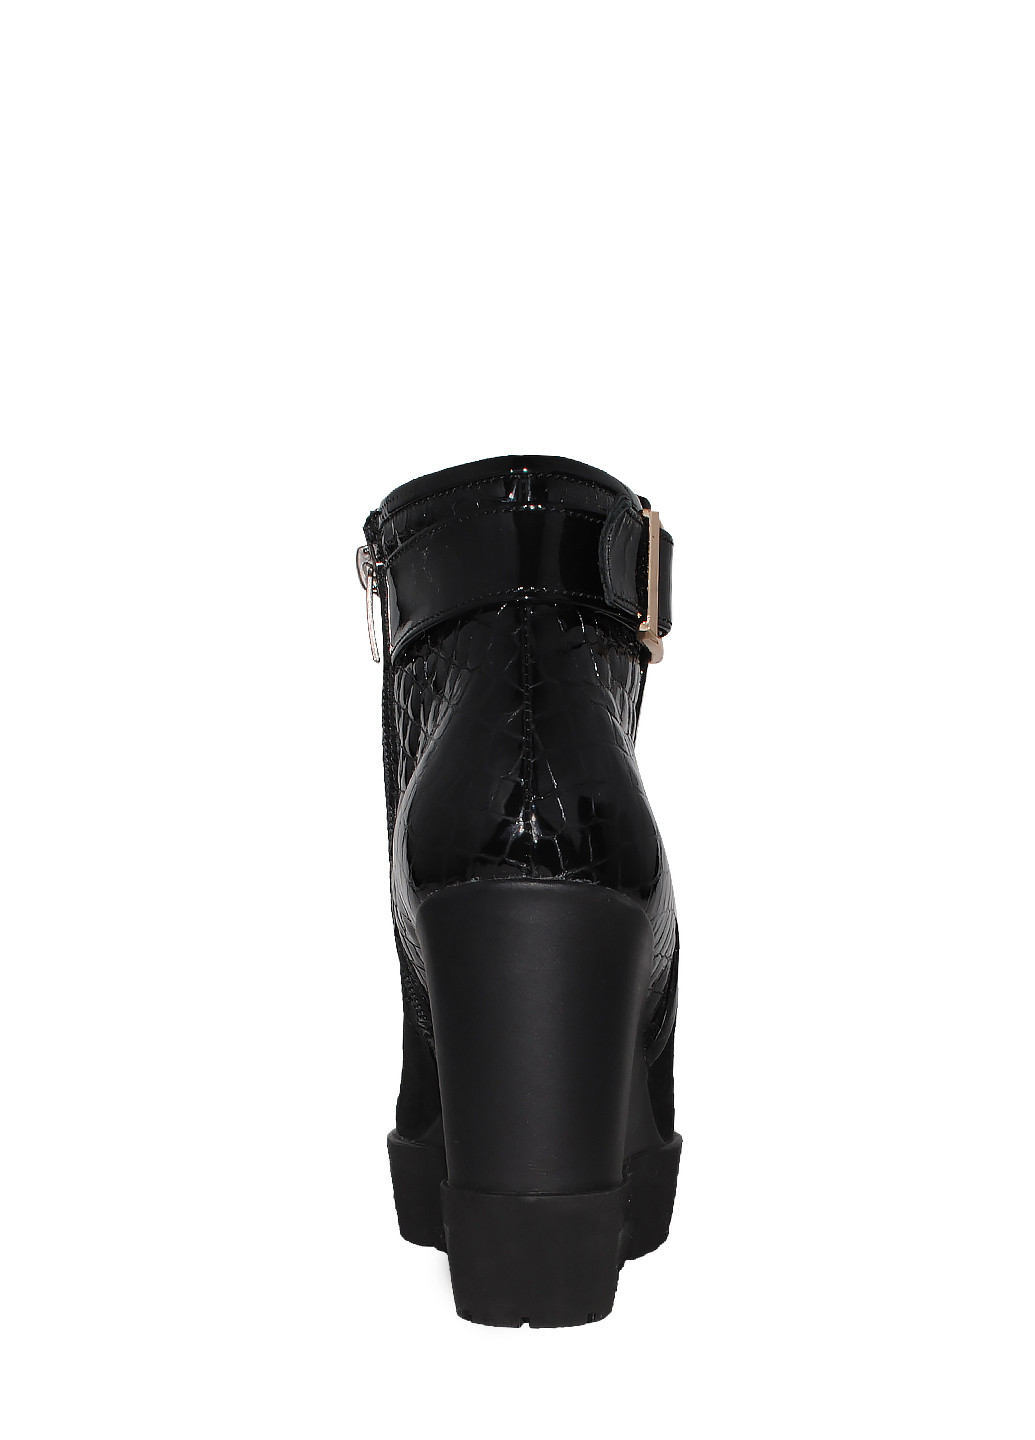 Зимние ботинки r632050 черный Arcoboletto из натуральной замши